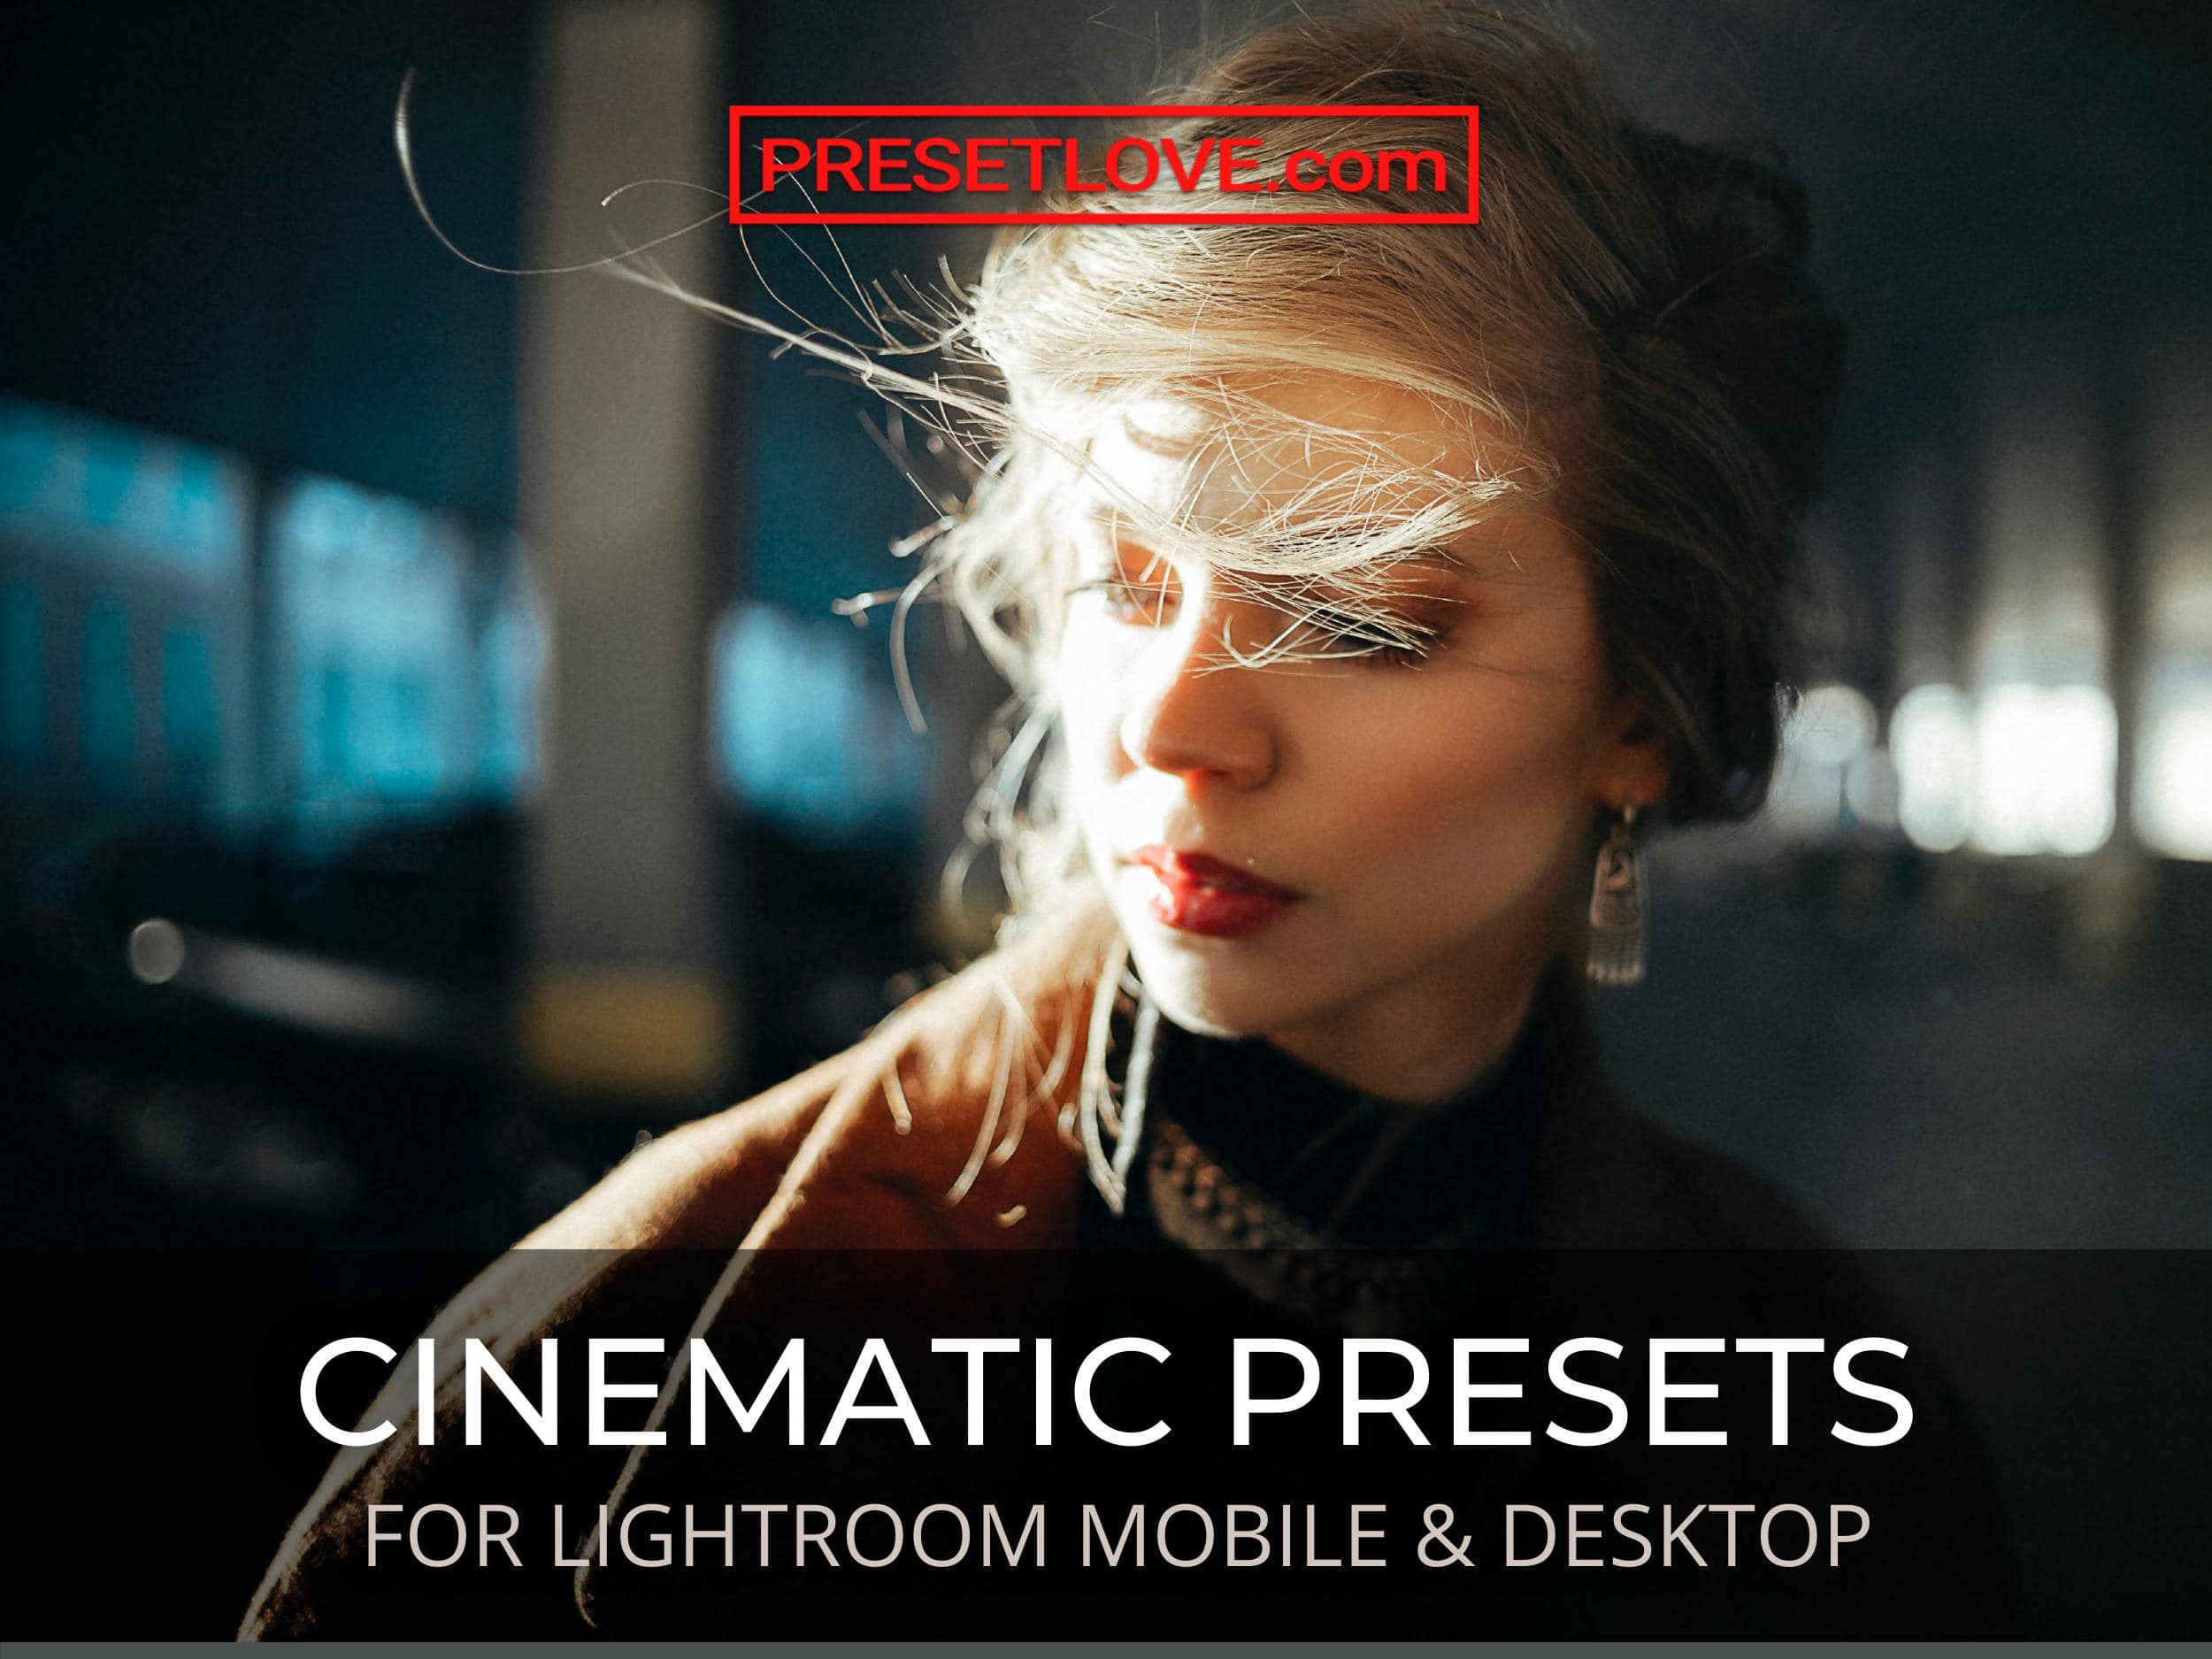 adobe lightroom presets free download for mobile